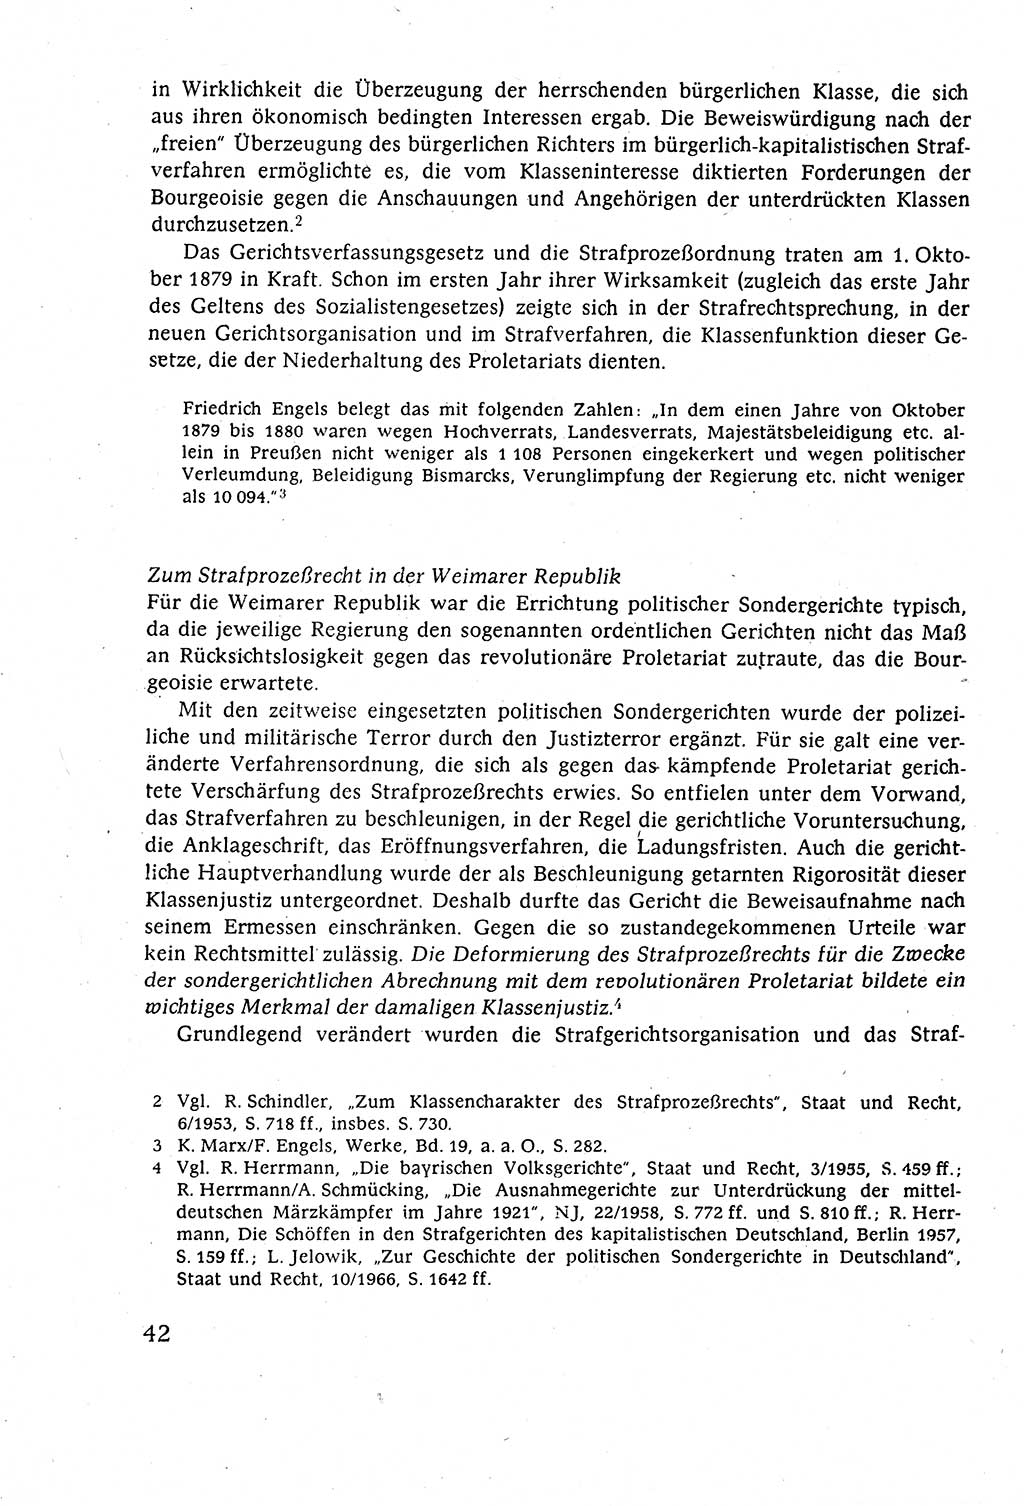 Strafverfahrensrecht [Deutsche Demokratische Republik (DDR)], Lehrbuch 1977, Seite 42 (Strafverf.-R. DDR Lb. 1977, S. 42)